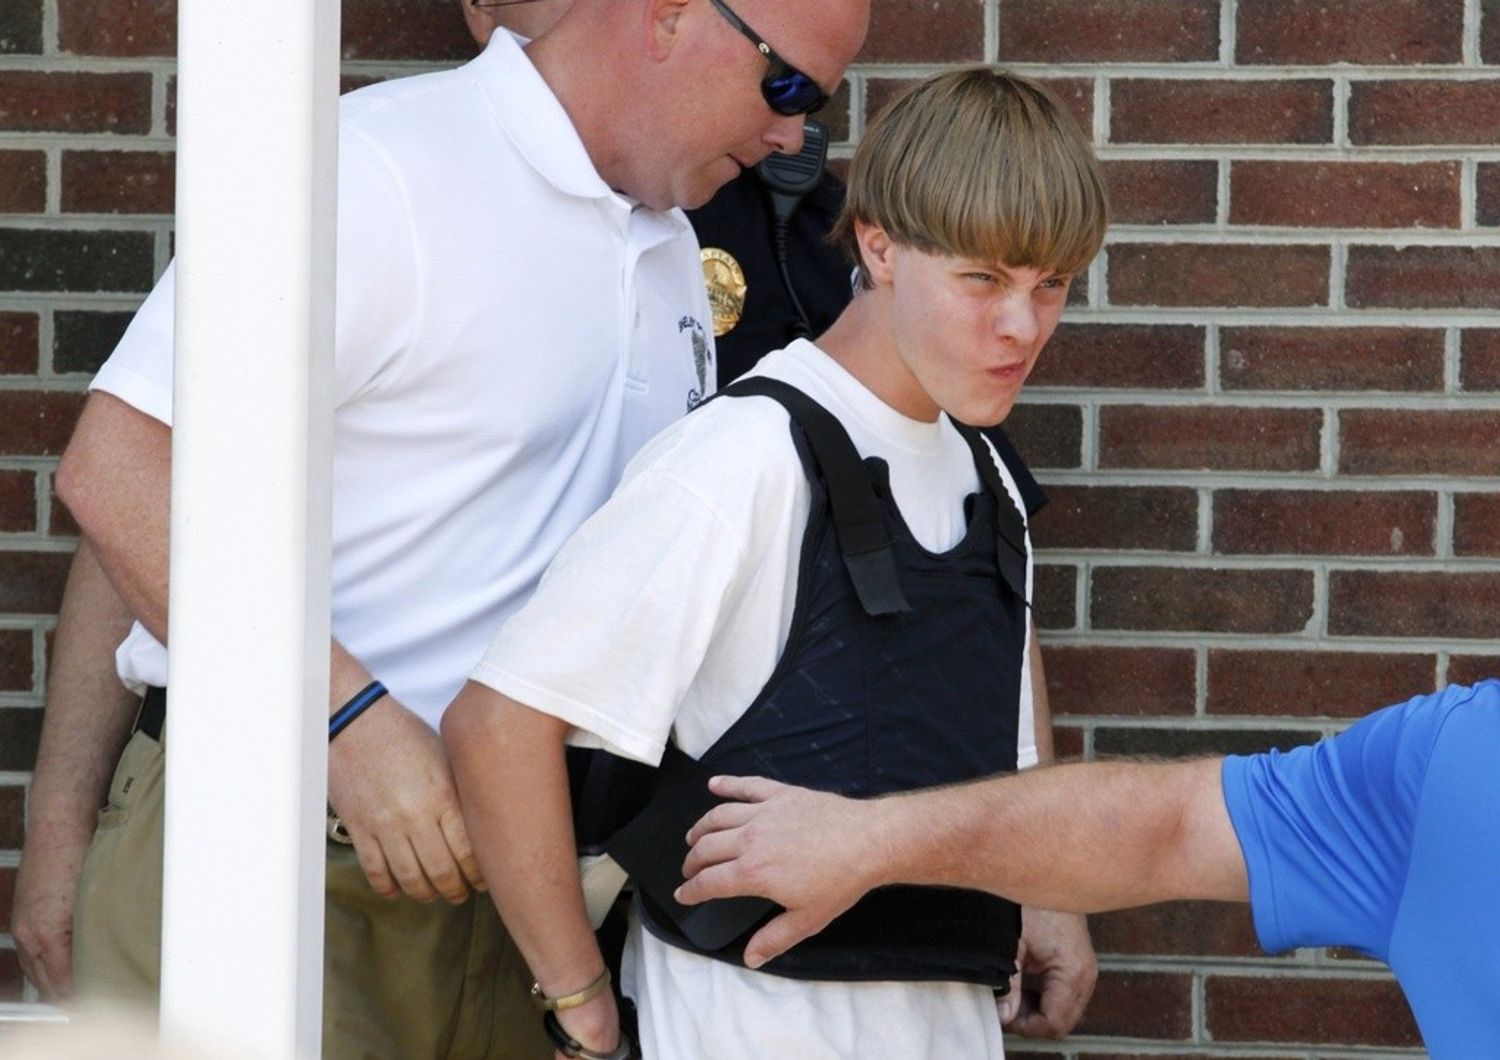 Il killer di Charleston confessa "volevo guerra razziale"